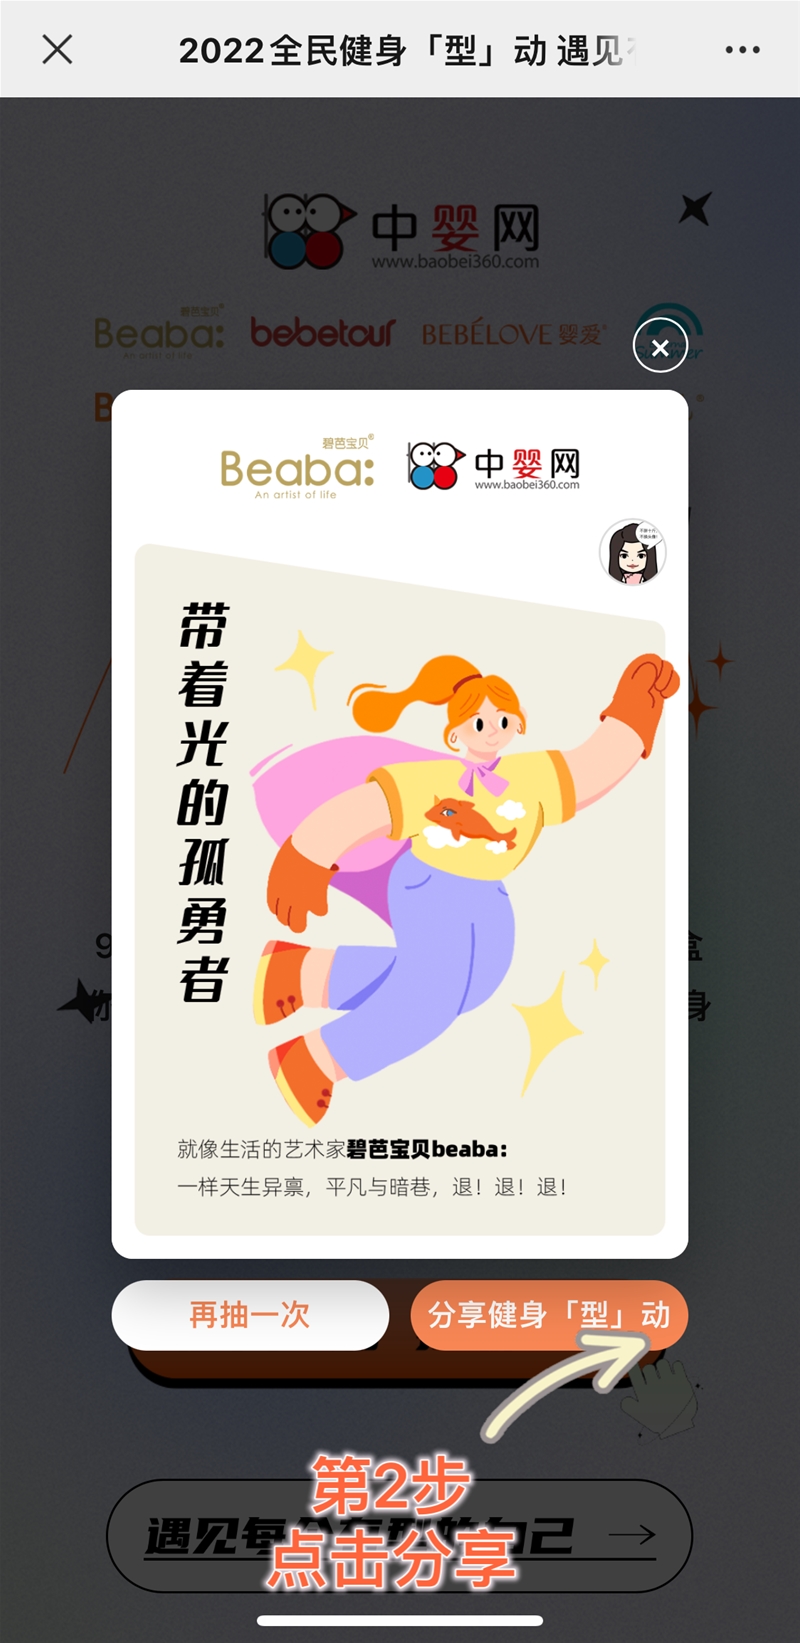 2022年全民健身日 | 中嬰網8月盲盒抽獎活動攻略